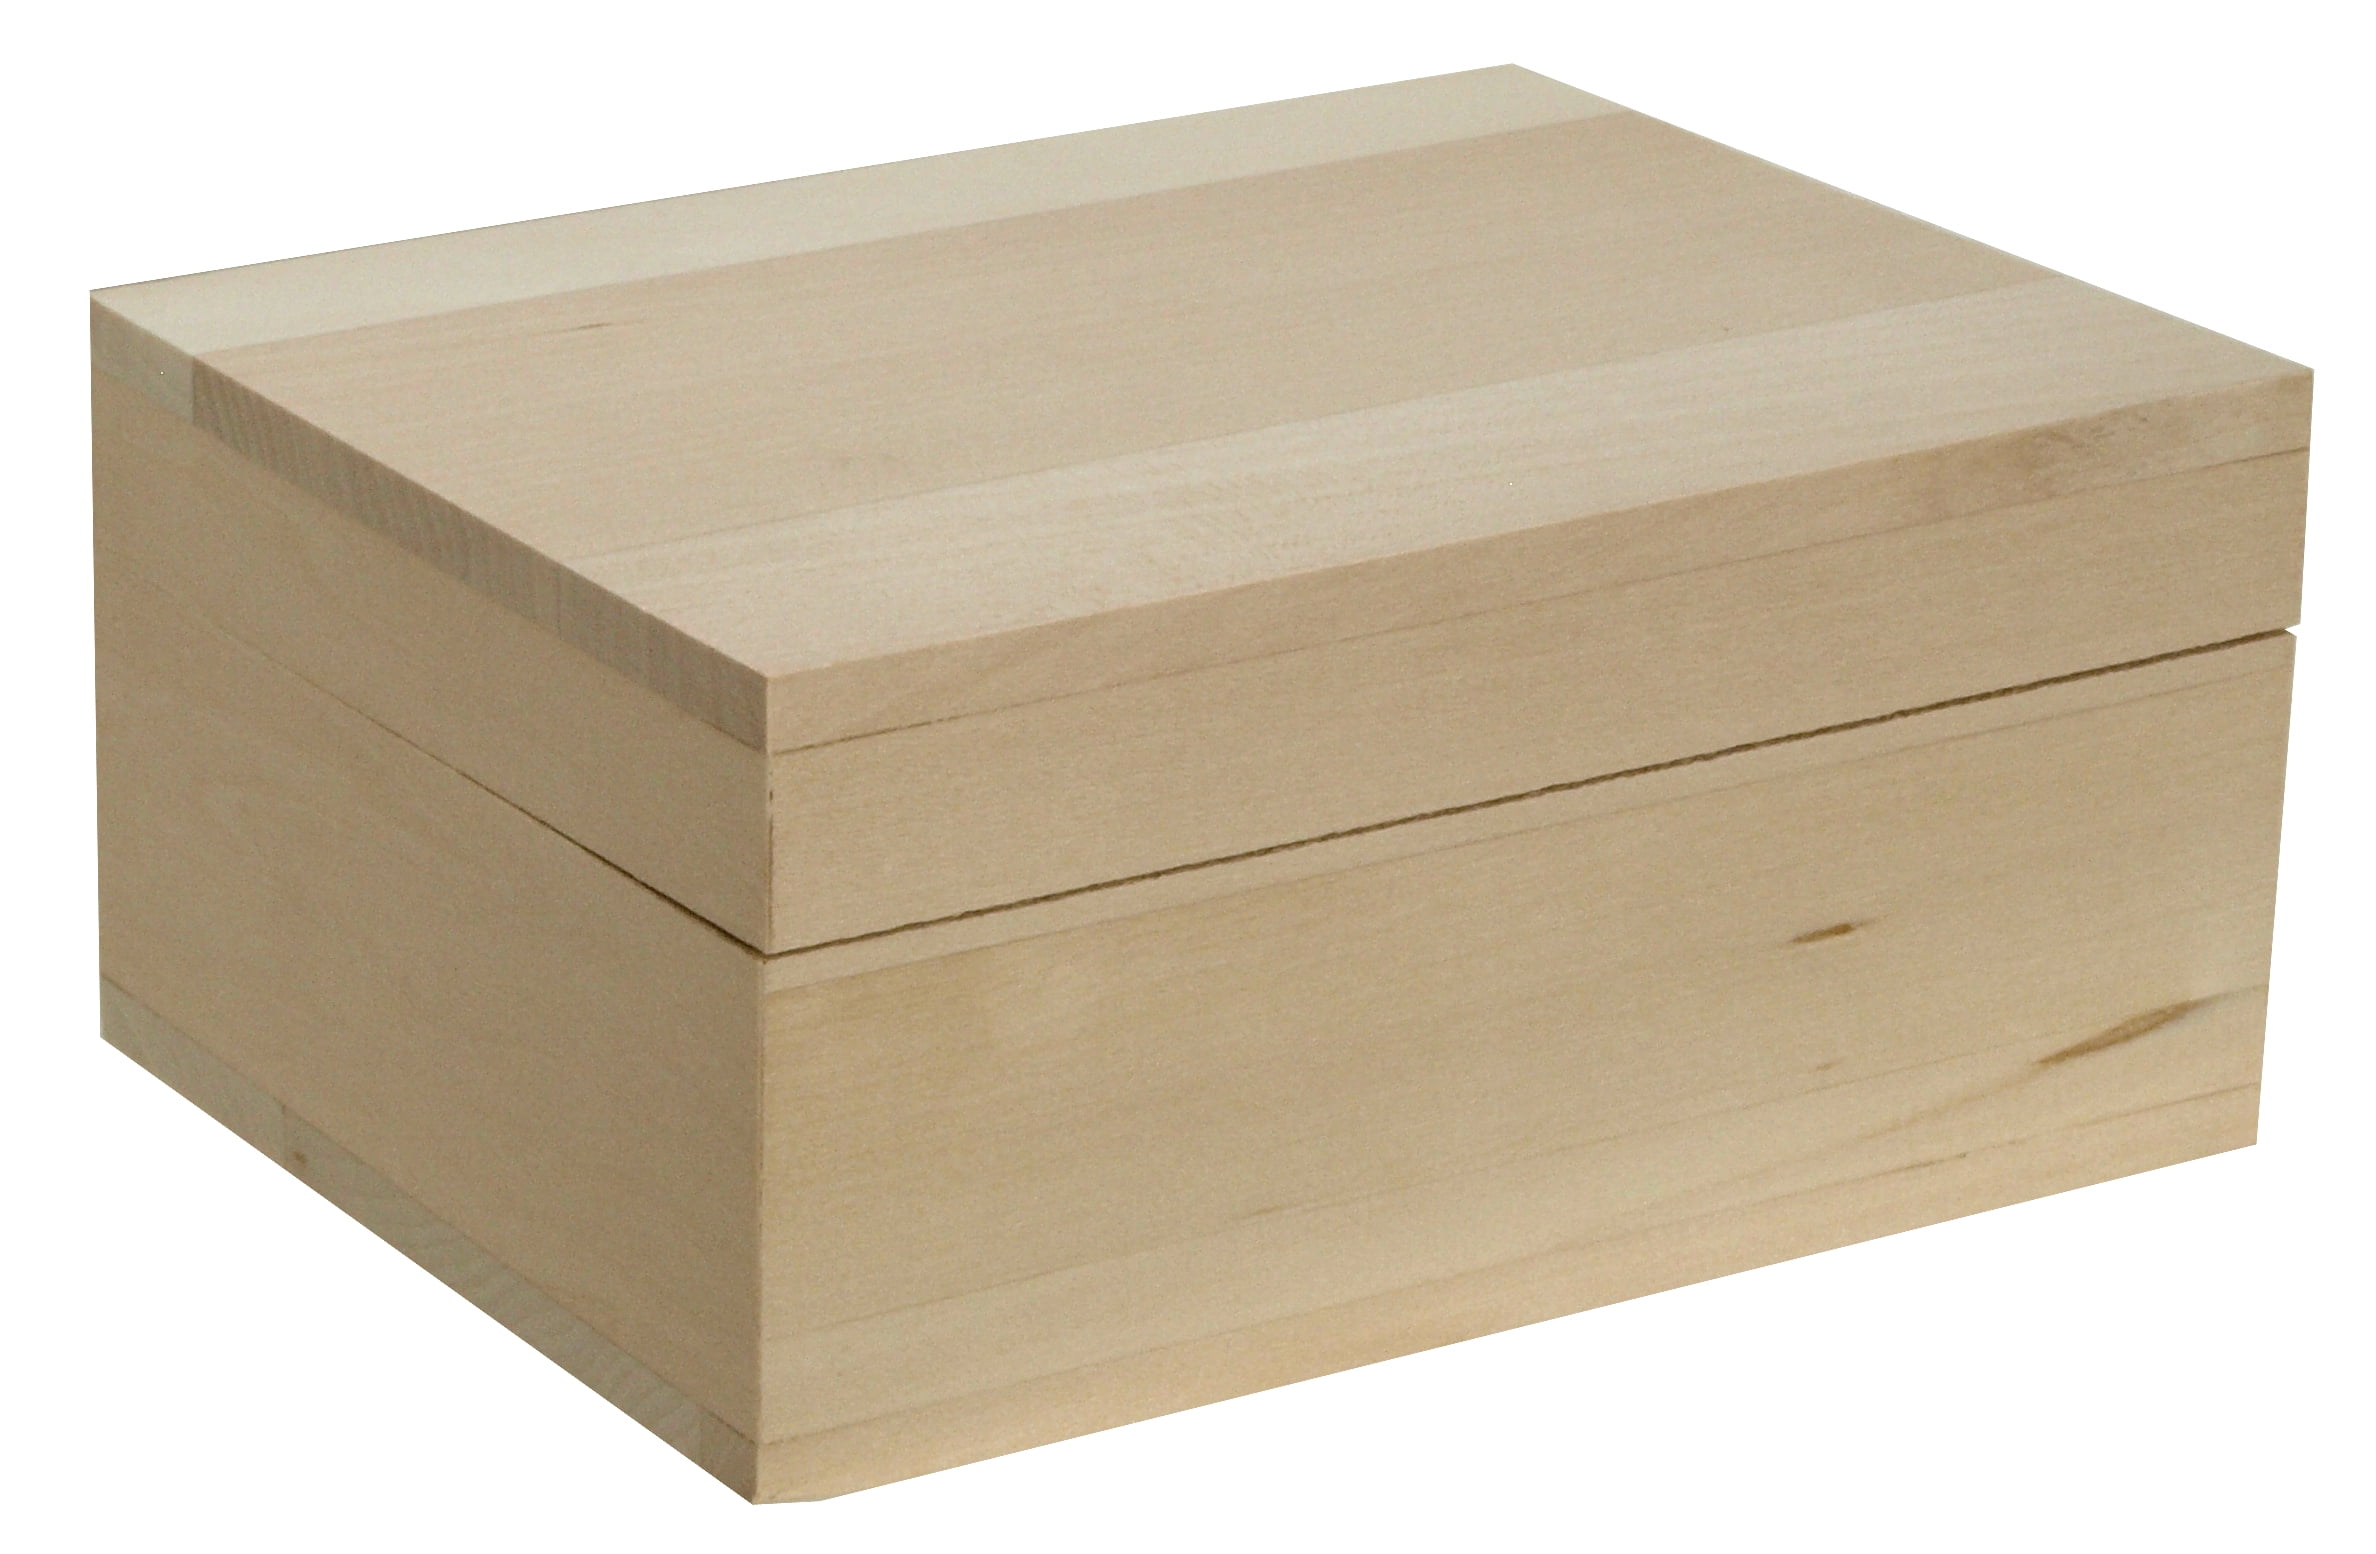 Wooden Plain Wood Boxes Storage Souvenirs Lid Craft Decoupage Hinges Box Home 